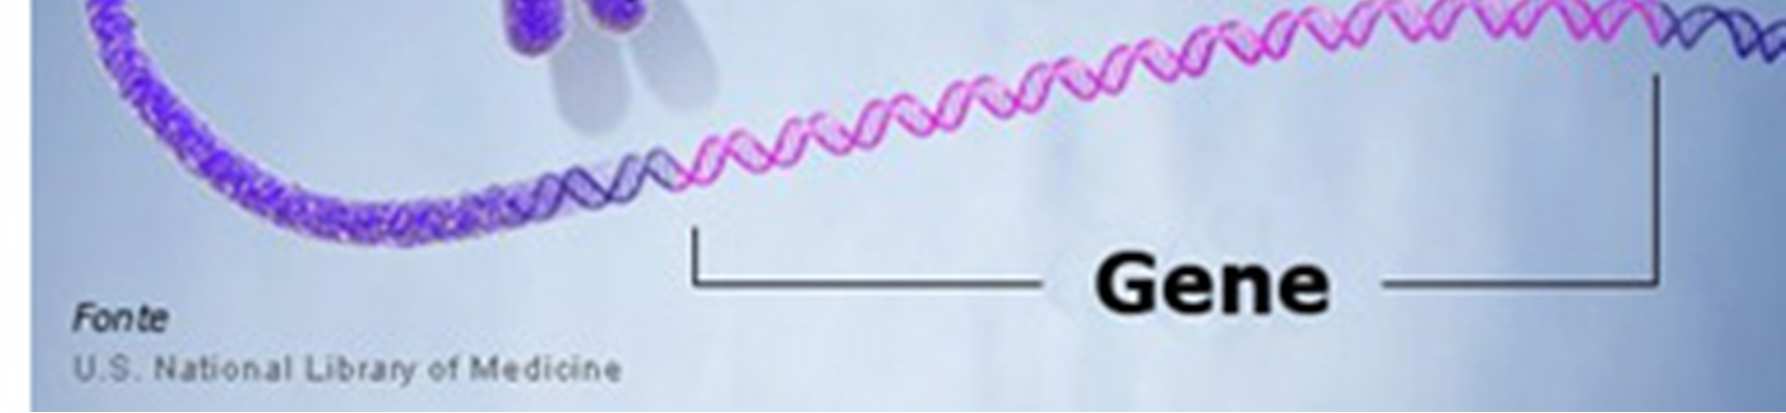 L adenina si lega solo con la timina e la citosina si lega solo con la guanina (A-T, C-G). Si dice che le basi A-T e C-G sono complementari. http://www.youtube.com/watch?